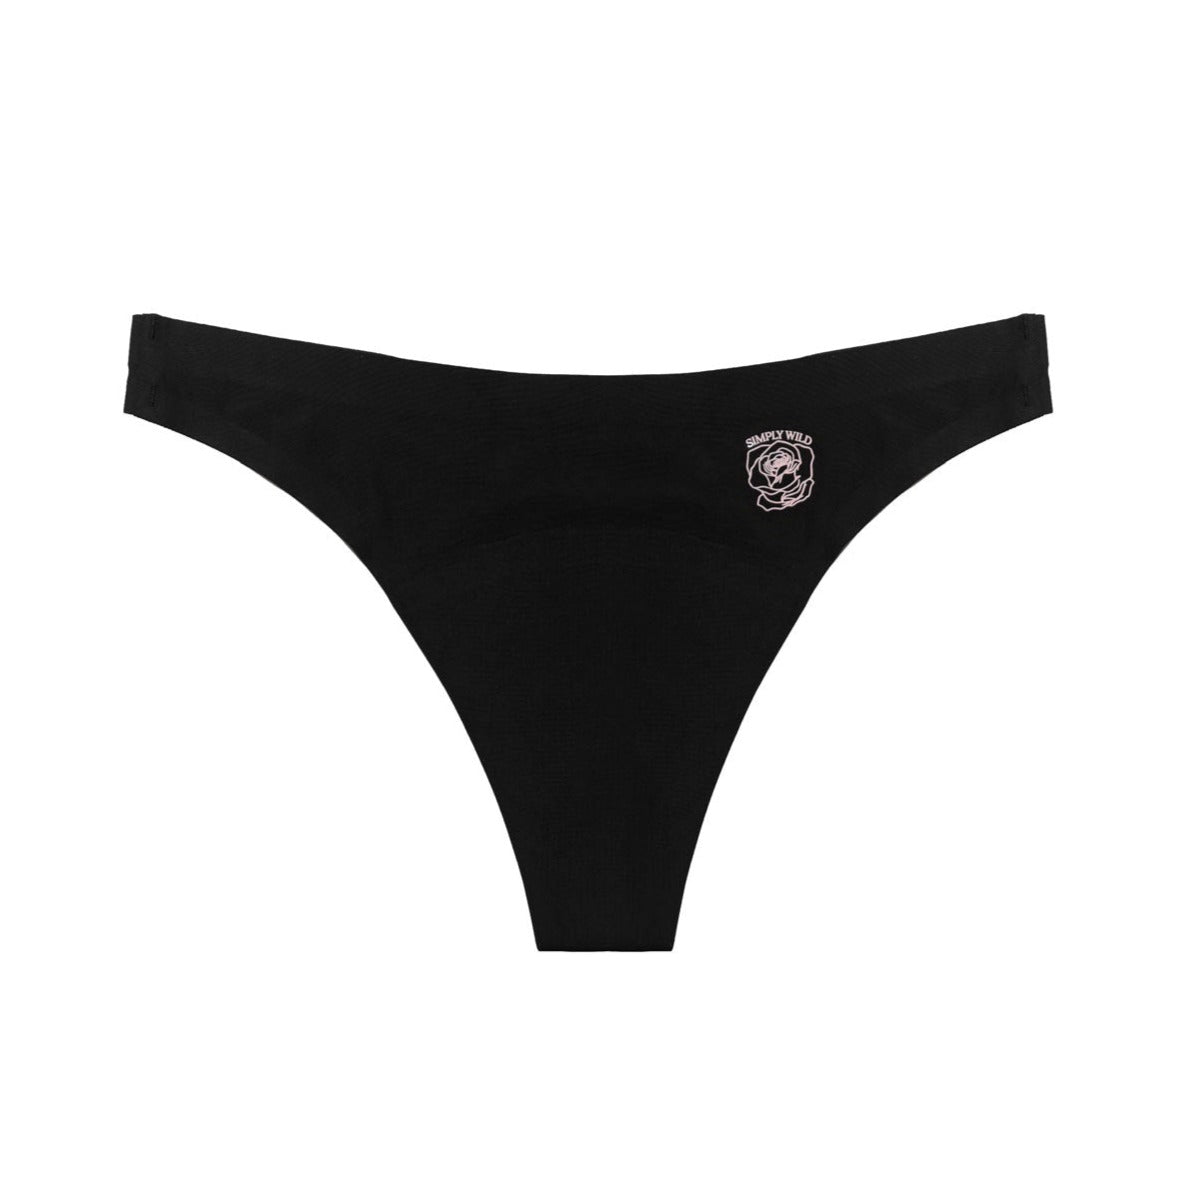 Simply Wild Goods - Moon Underwear: Thong Light Flow Period Underwear 3 pack